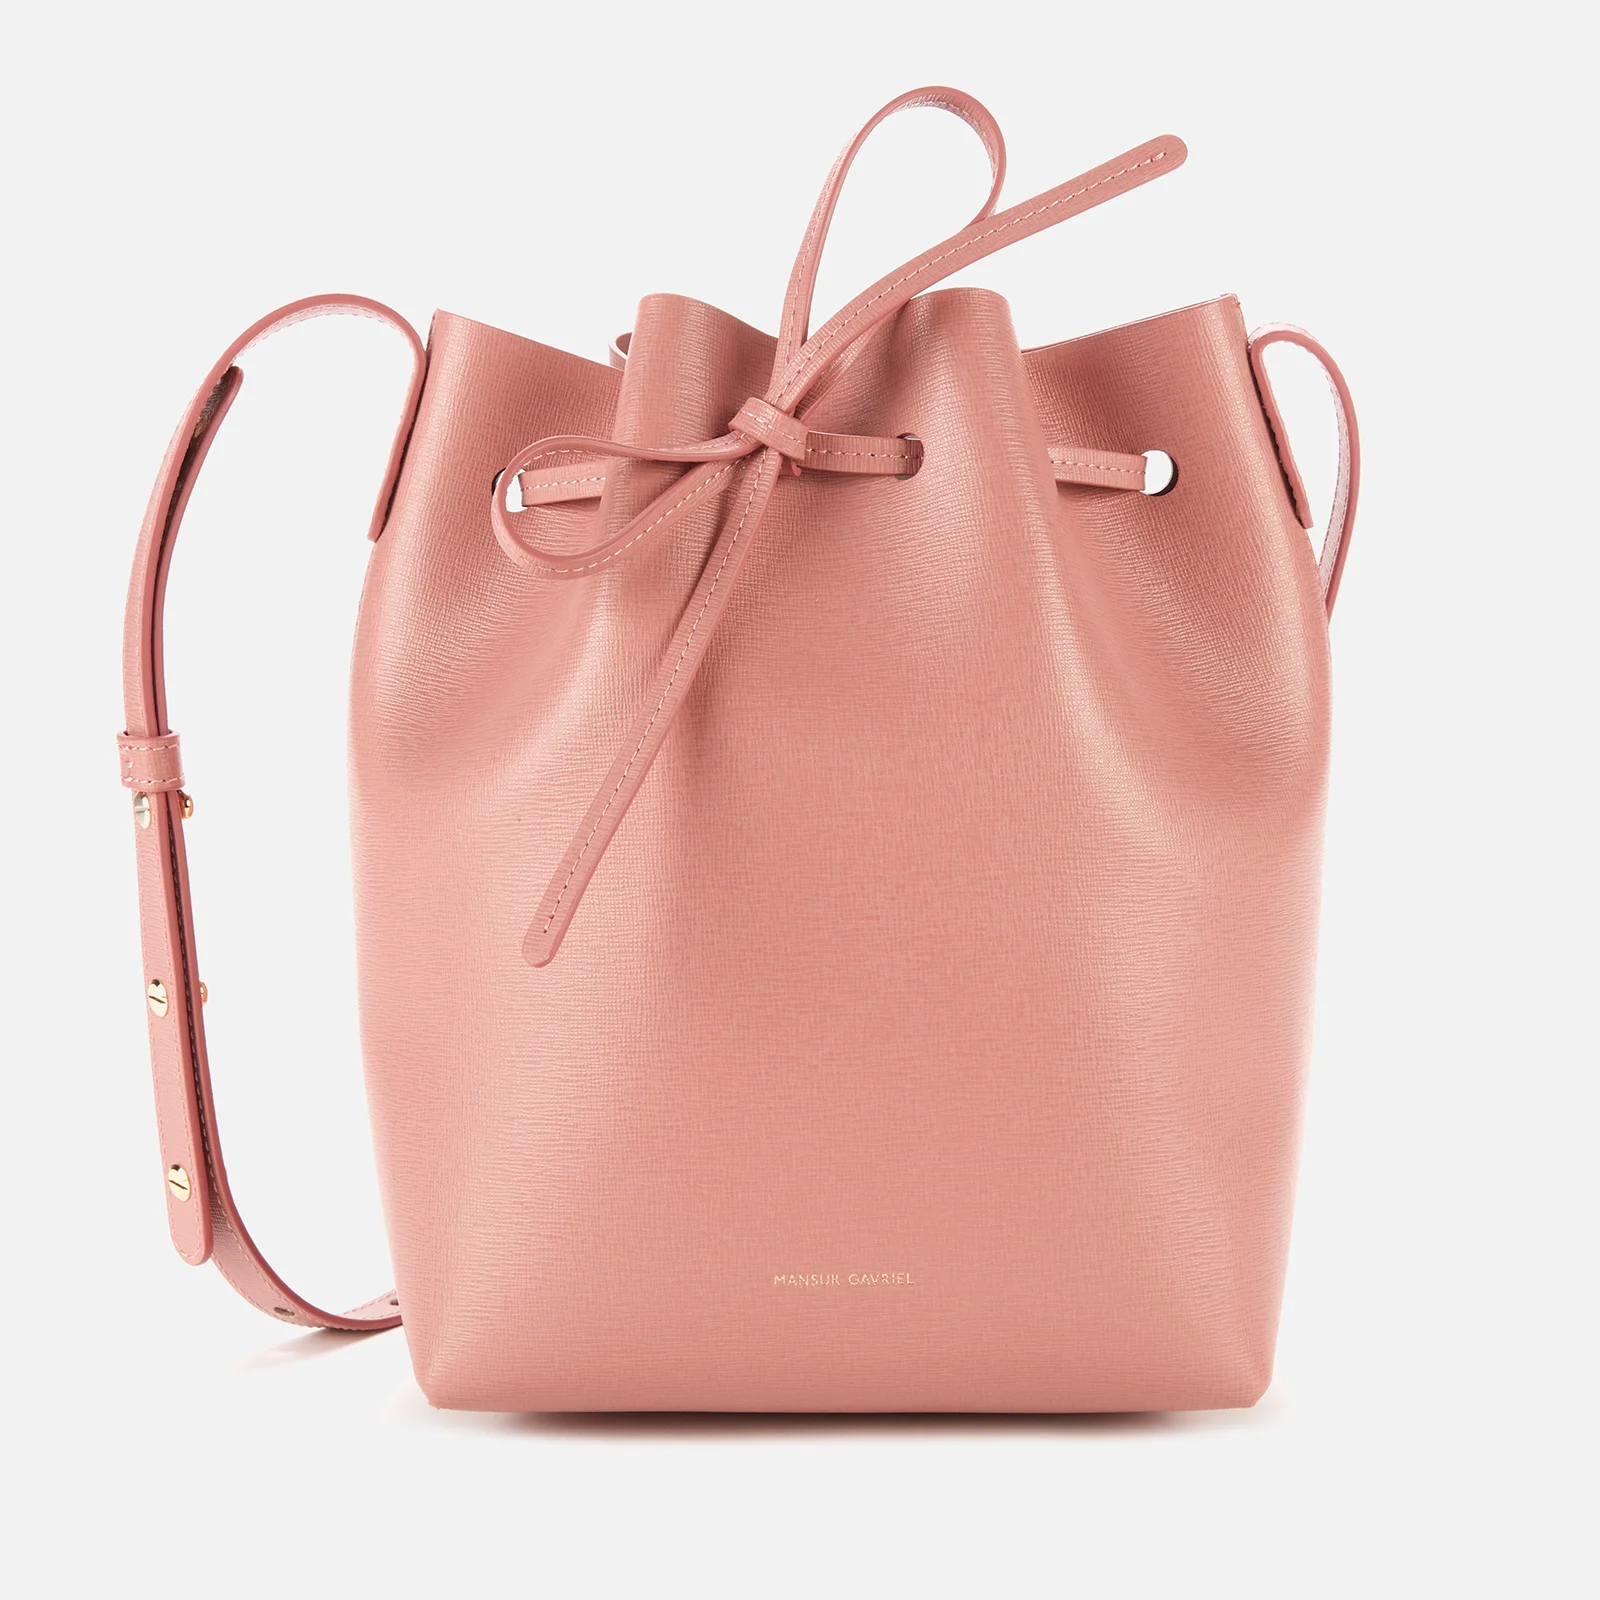 Mansur Gavriel Women's Mini Bucket In Saffiano Bag - Pink Image 1